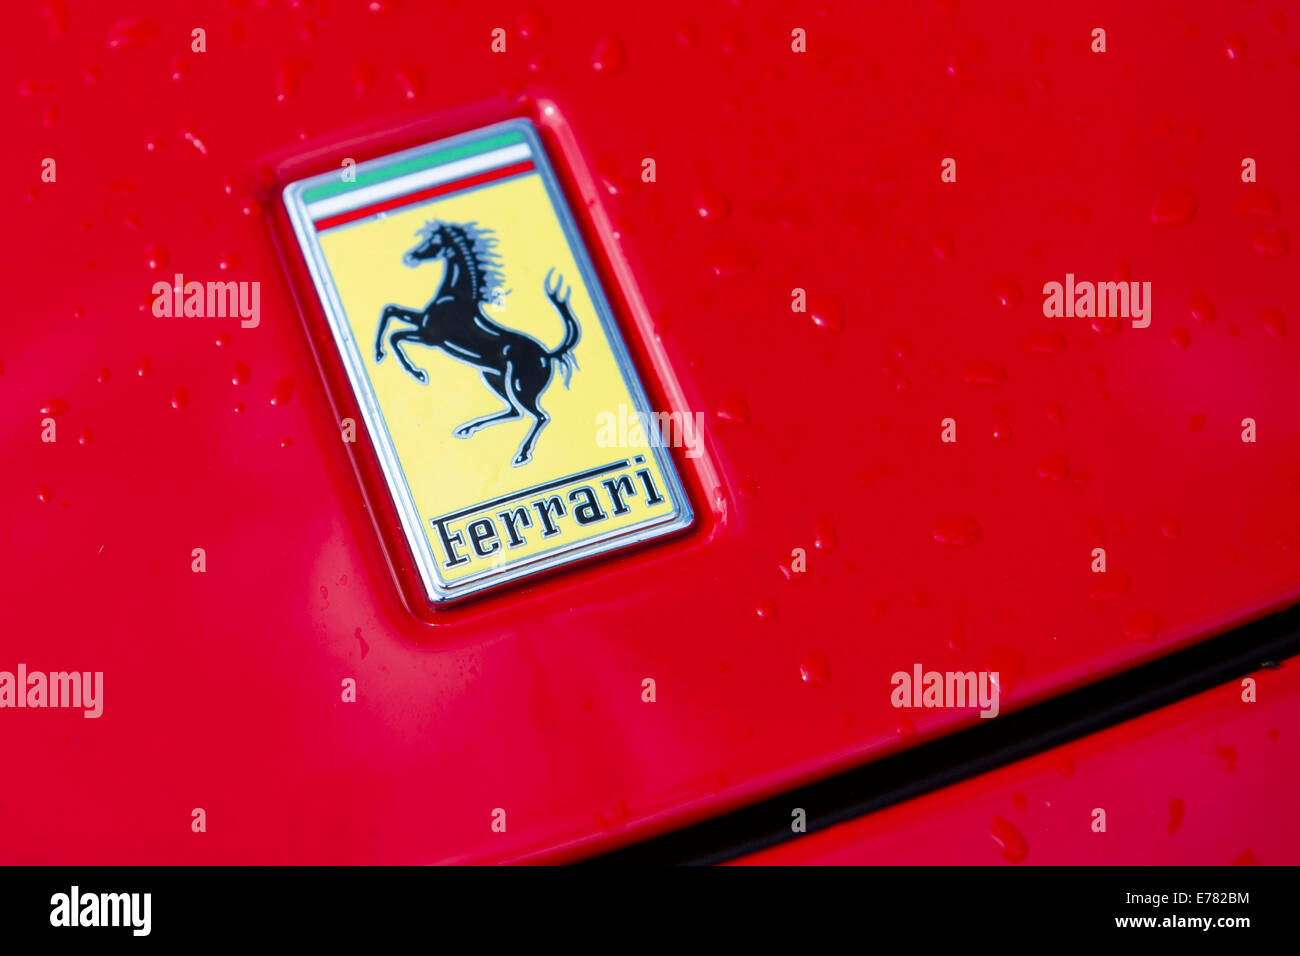 Ferrari logo on bonnet of red Ferrari car. Stock Photo